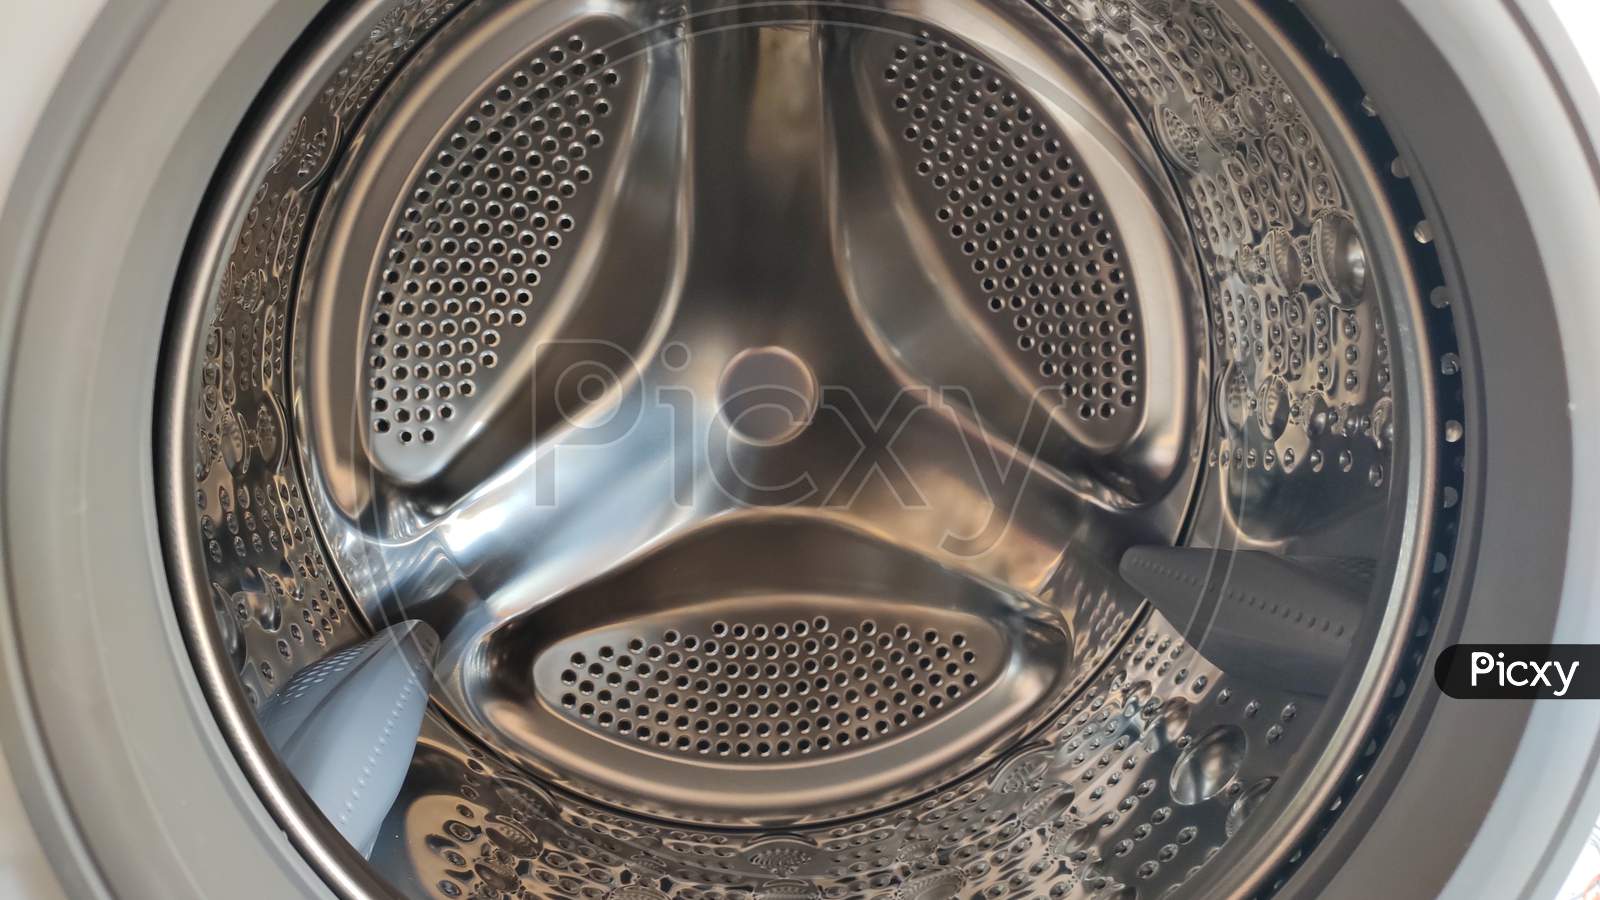 Washing machine drum